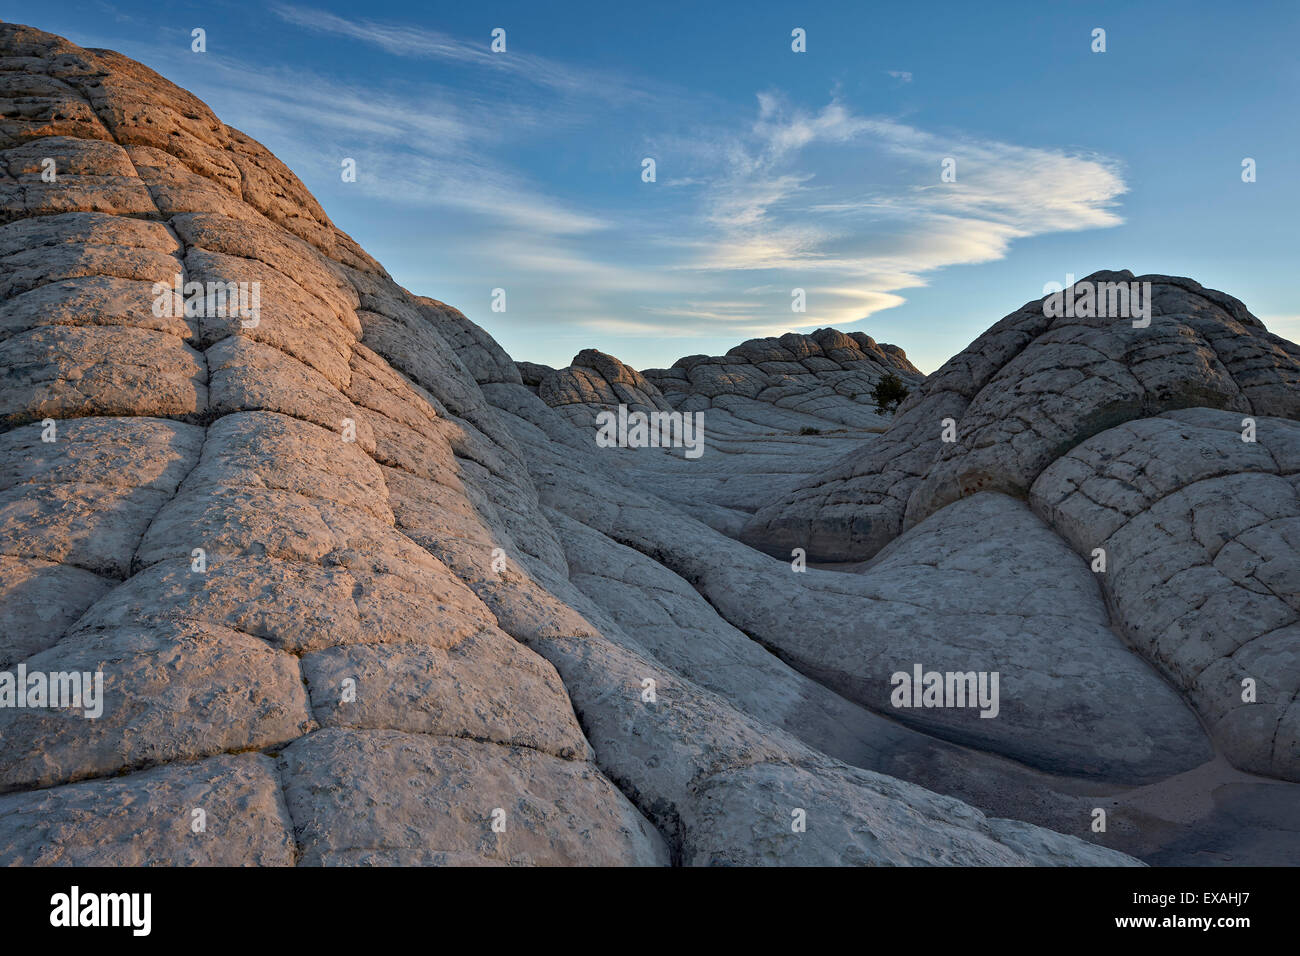 Las ondas cerebrales, White Rock Pocket, Vermilion Cliffs National Monument, Arizona, Estados Unidos de América, América del Norte Foto de stock